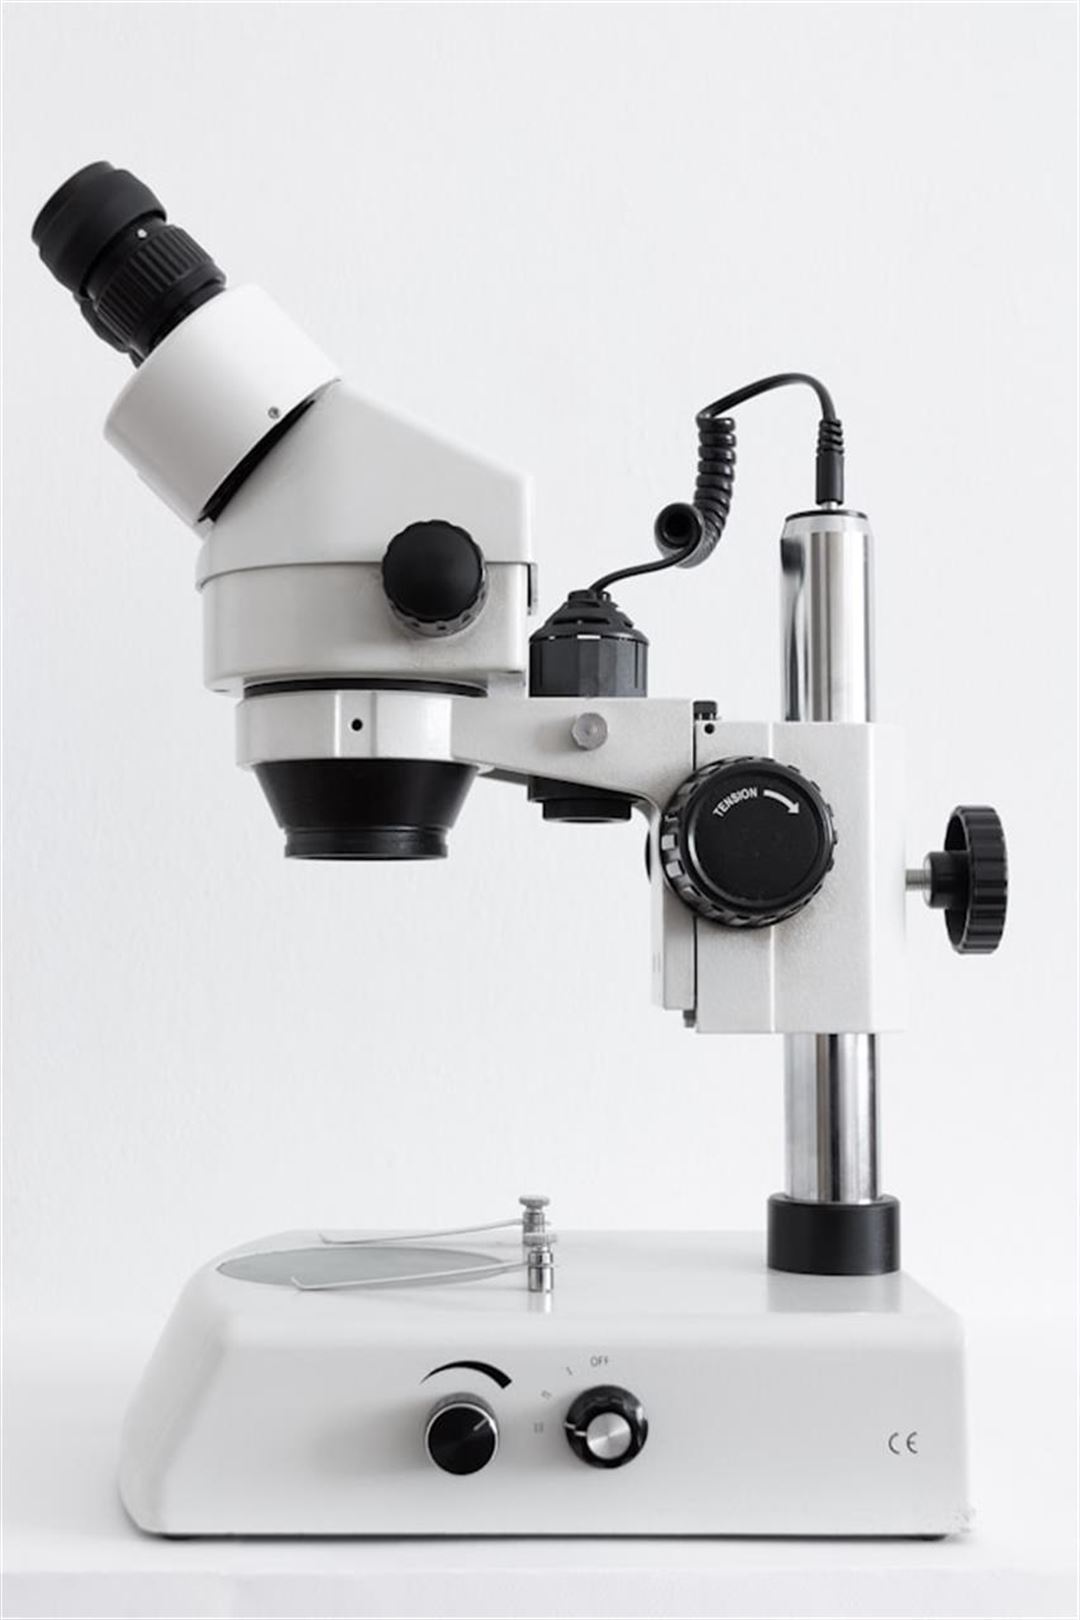 Udforsk verden af mikroskoper: Et nærmere kig på et videnskabeligt vidunder